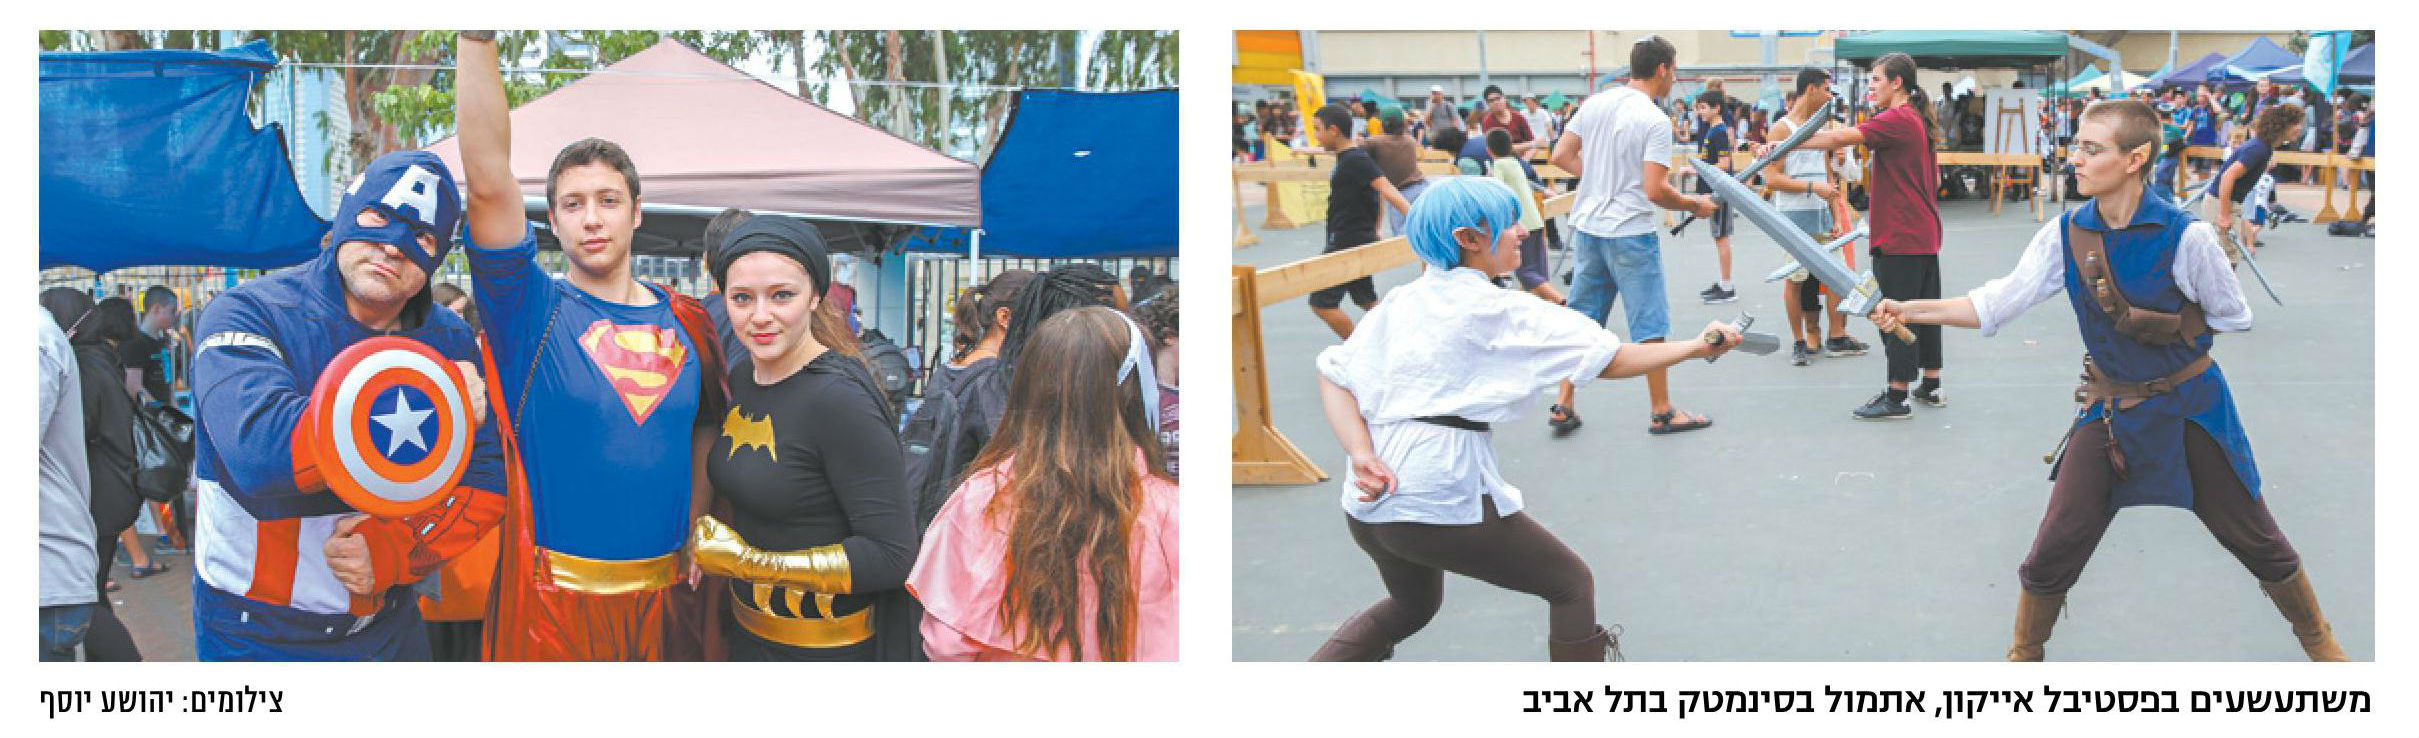 פסטיבל אייקון 2017: תרבויות הגיע ל"ישראל היום"